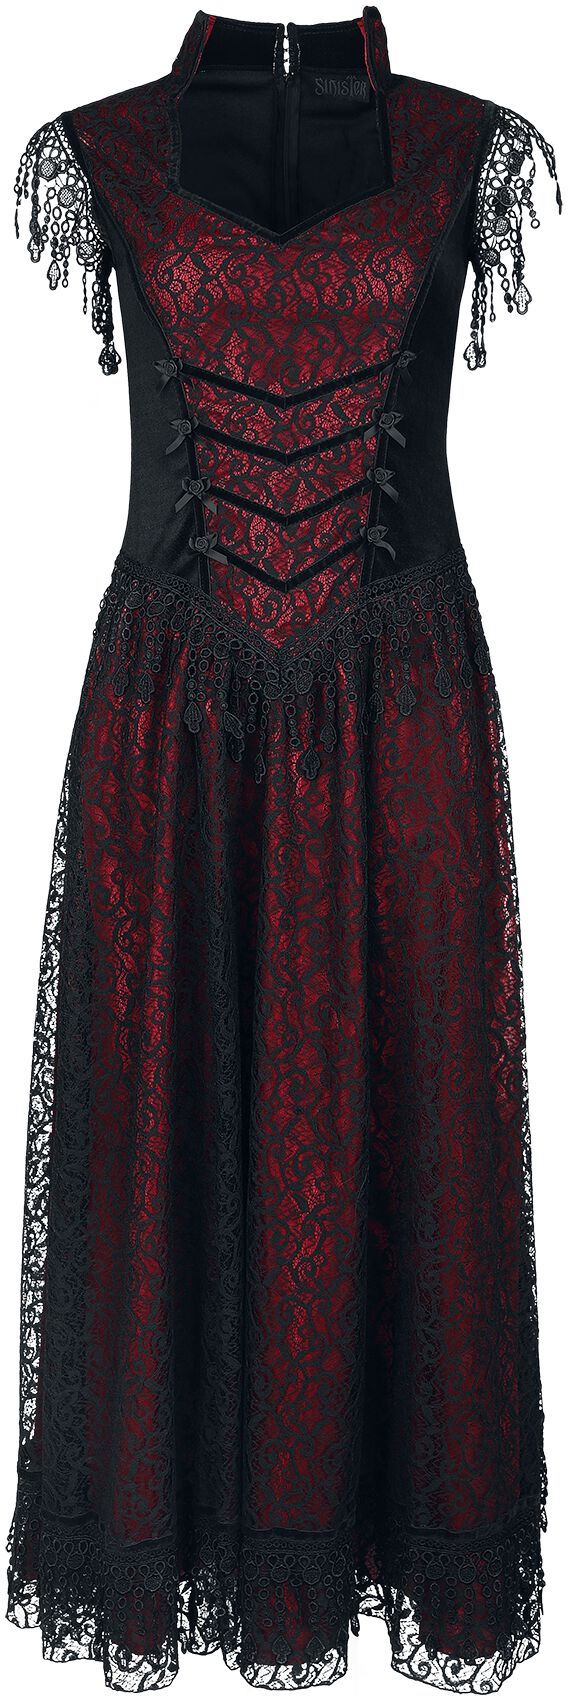 Robe longue Gothic de Sinister Gothic - Robe Gothique - M - pour Femme - noir/rouge